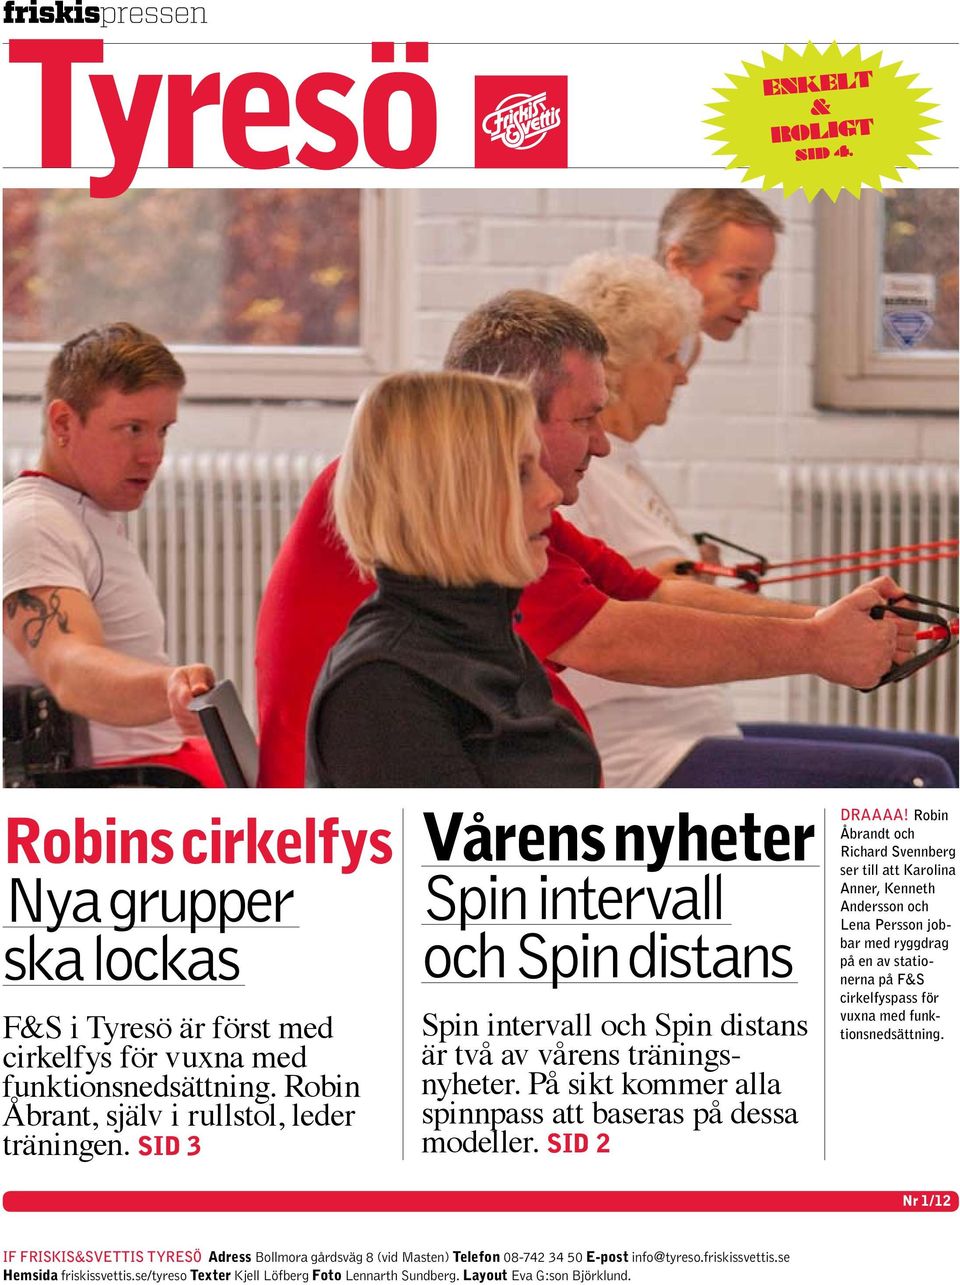 Robin Åbrandt och Richard Svennberg ser till att Karolina Anner, Kenneth Andersson och Lena Persson jobbar med ryggdrag på en av stationerna på F&S cirkelfyspass för vuxna med funktionsnedsättning.